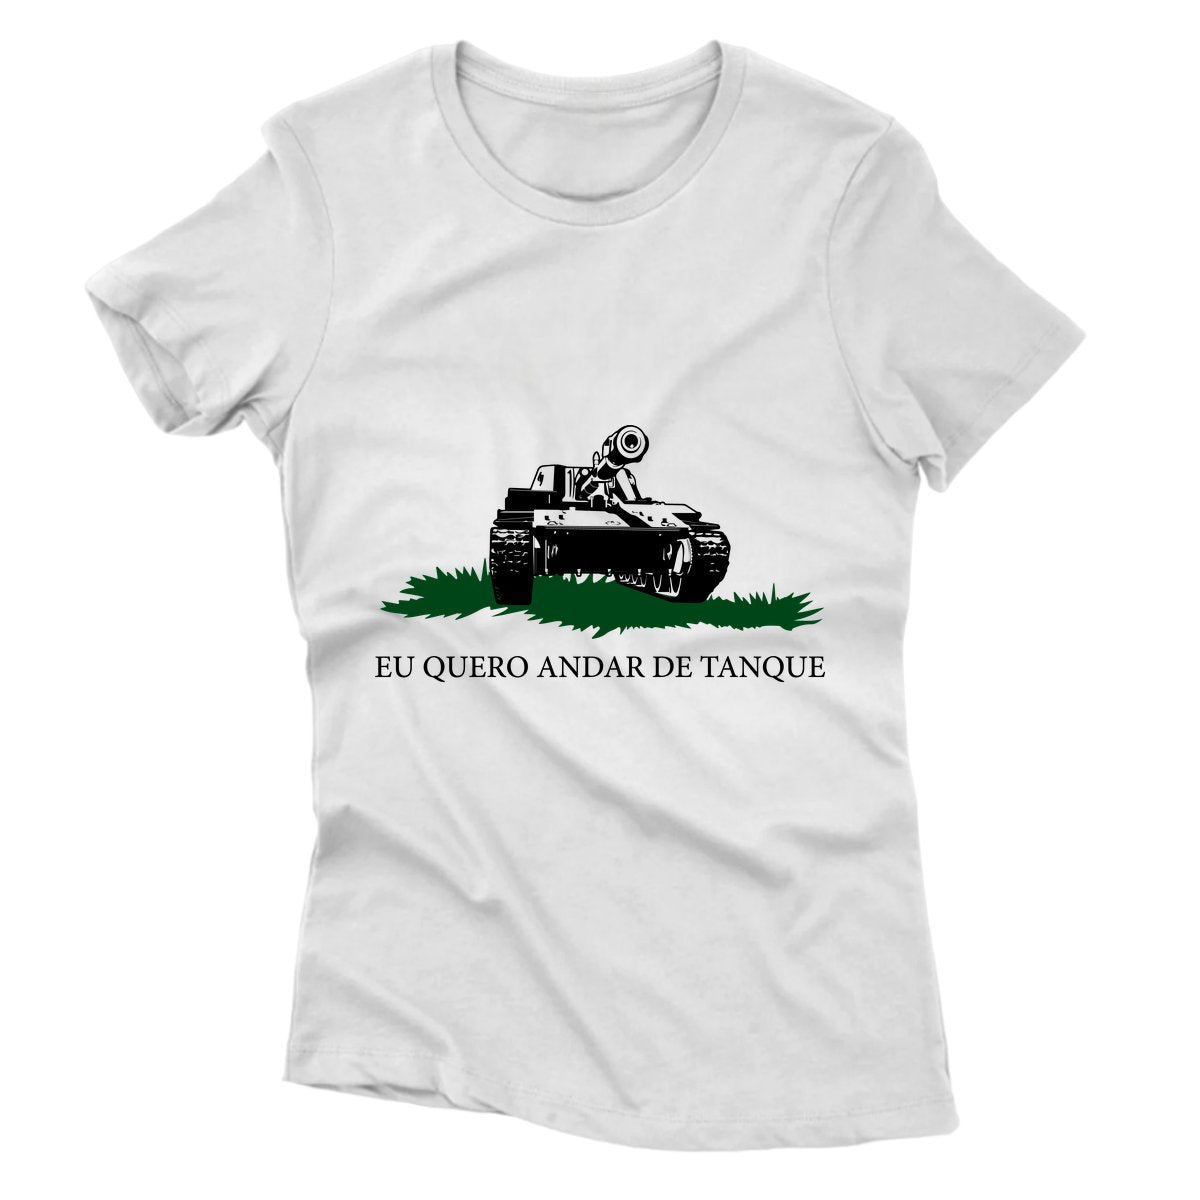 Camiseta - Gadsden - Eu Quero Andar de Tanque